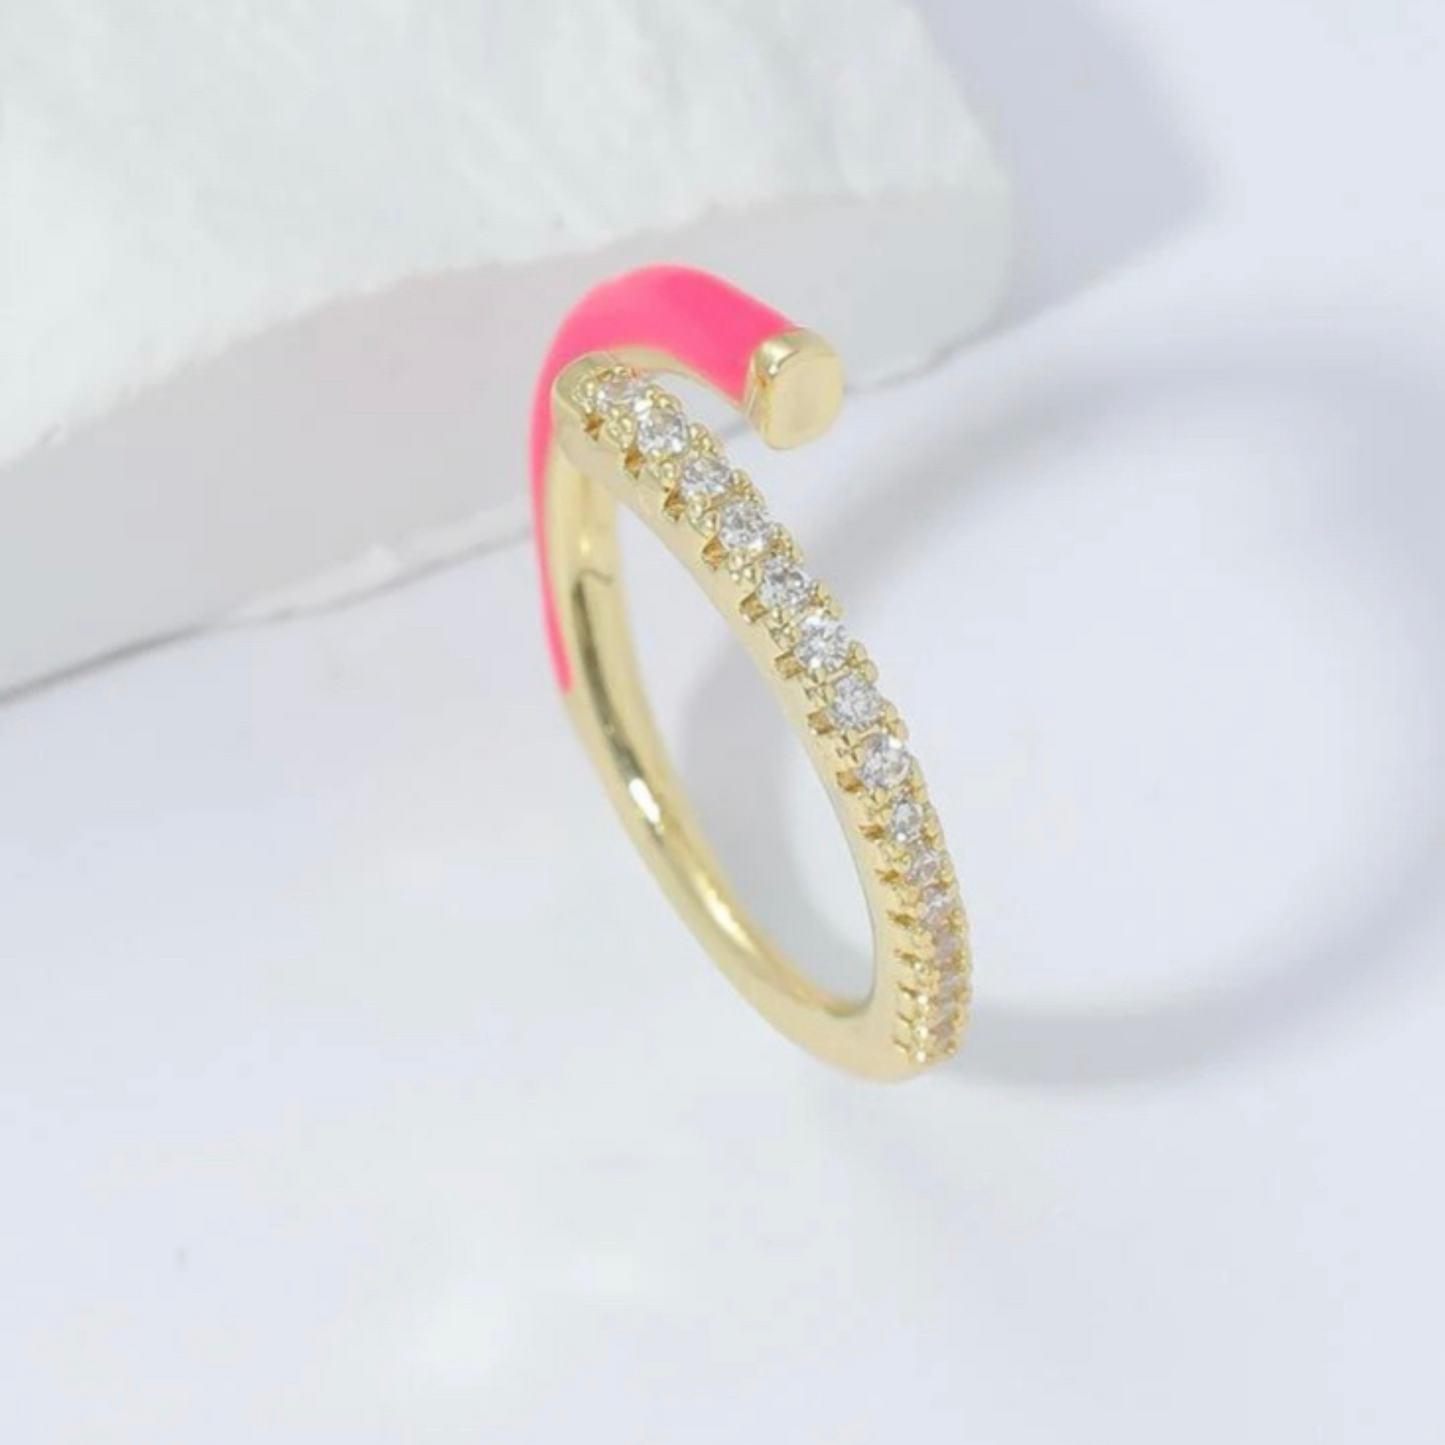 Hot Pink Crystal Ring